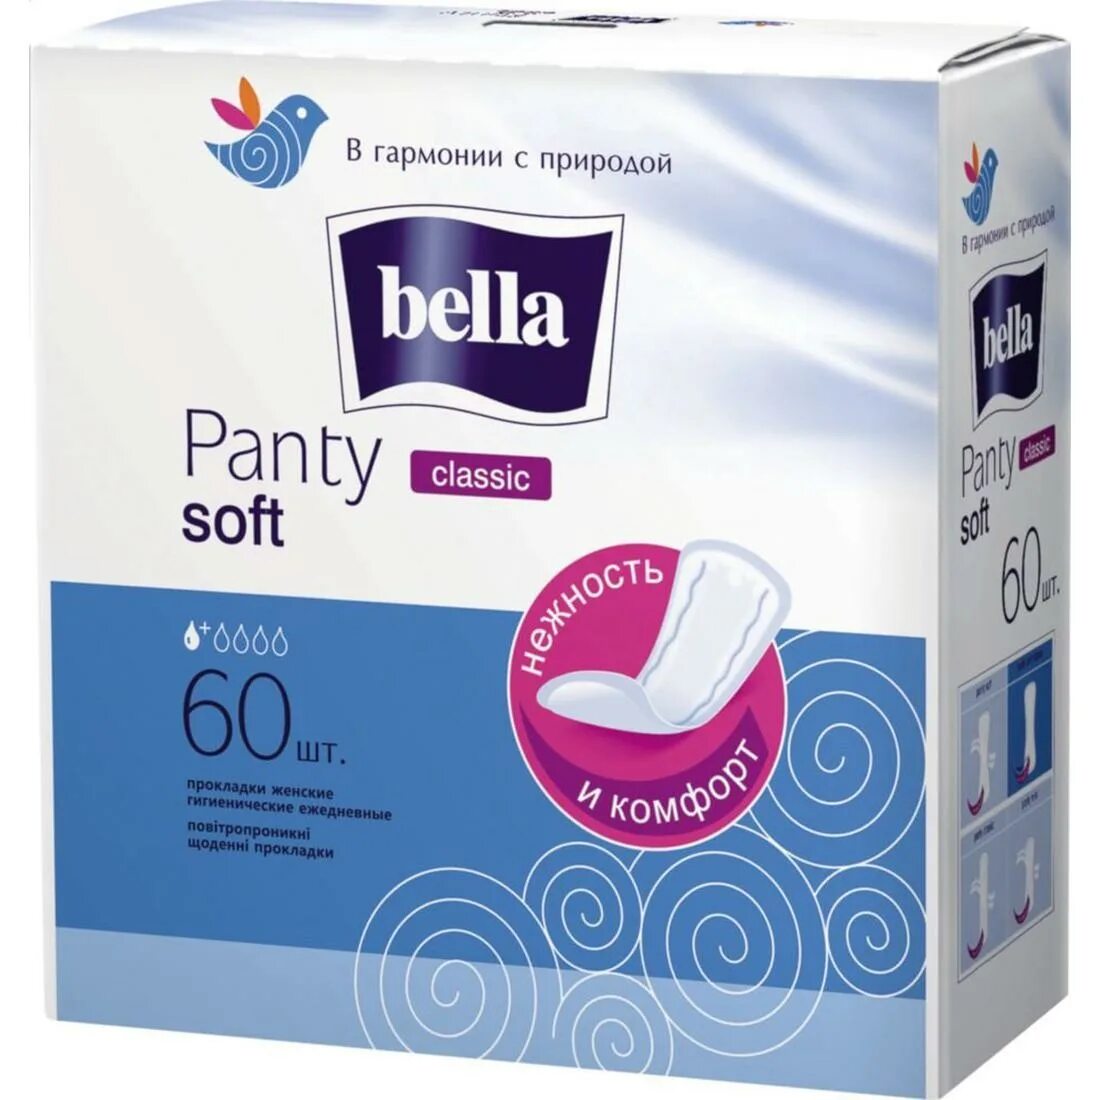 Bella panty Soft ежедневные прокладки 60 шт. Прокладки Bella panty Soft 60 шт. Прокладки ежедневные Bella panty Soft Classic 20шт. Ежедневные прокладки "panty Soft", Bella, 60+10 шт.